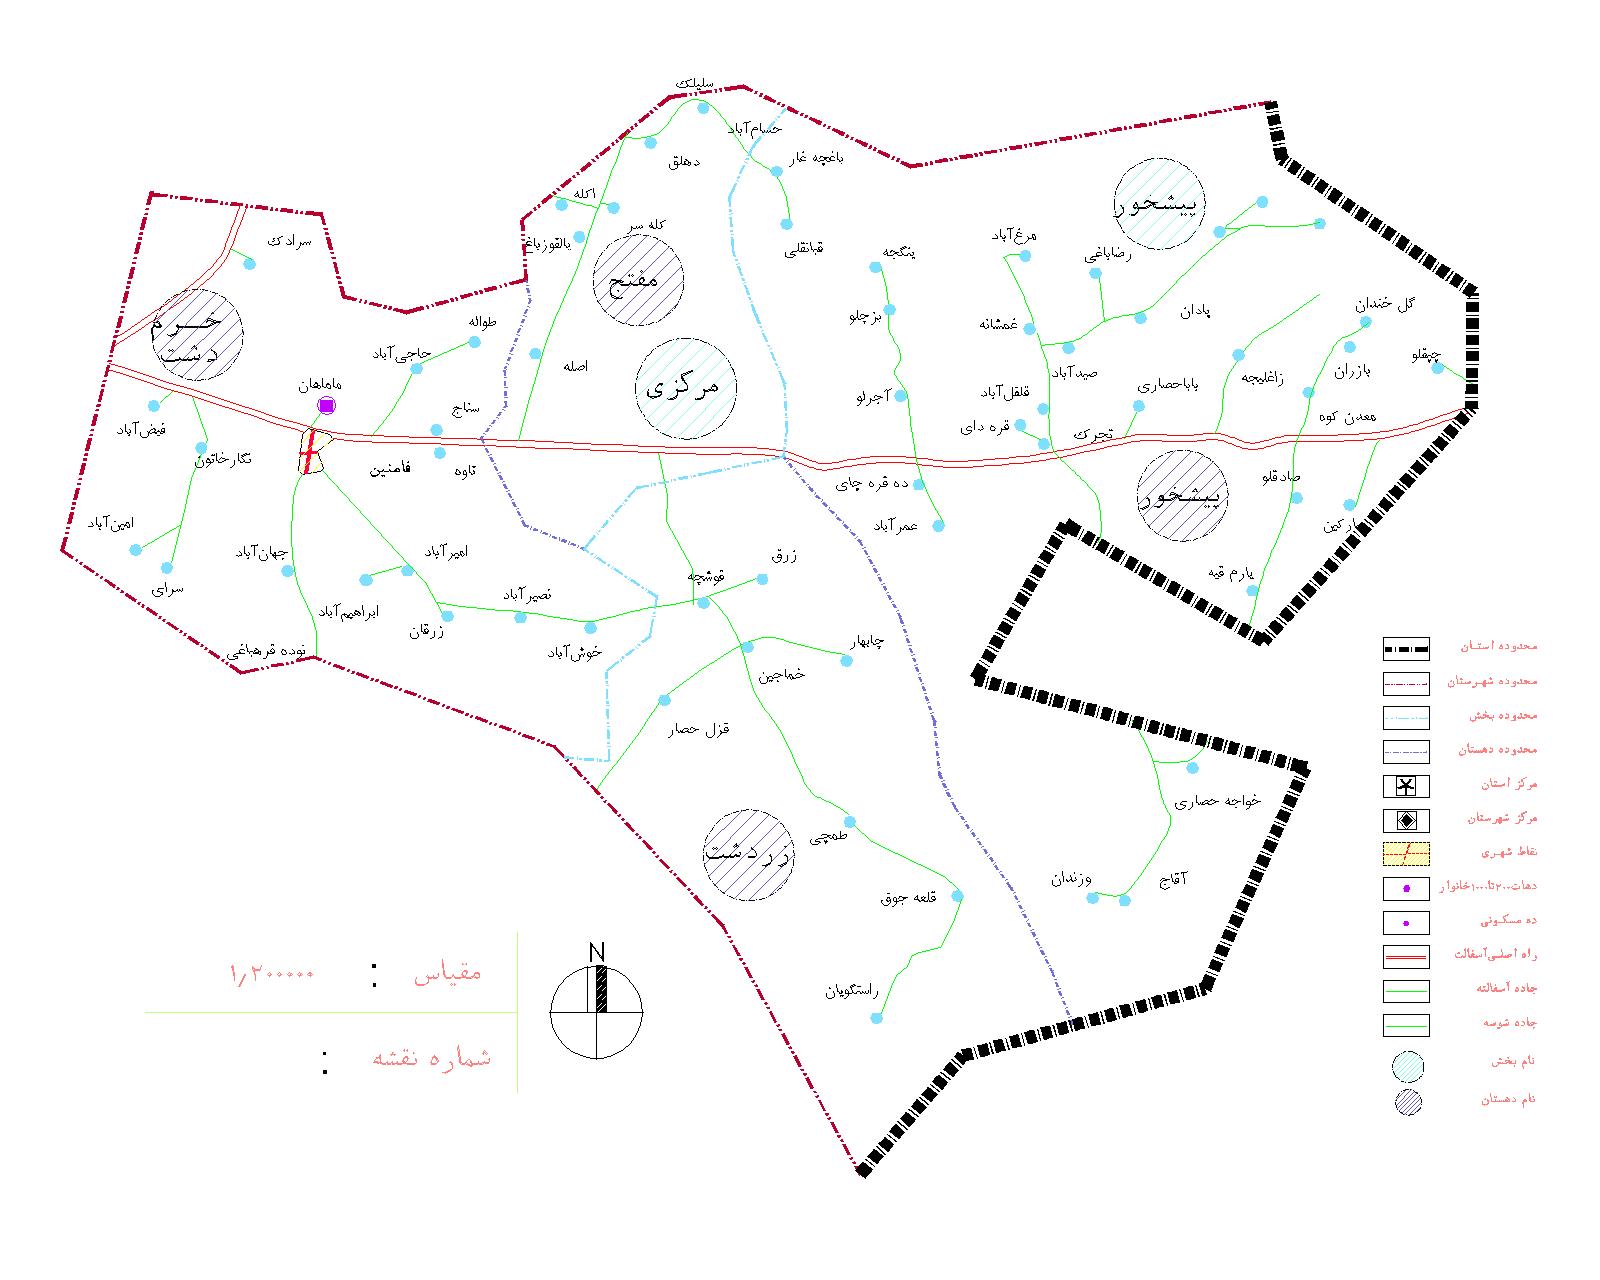 دانلود نقشه اتوکدی شهرستان فامنین - استان همدان - فایل کده: فروشگاه همه!